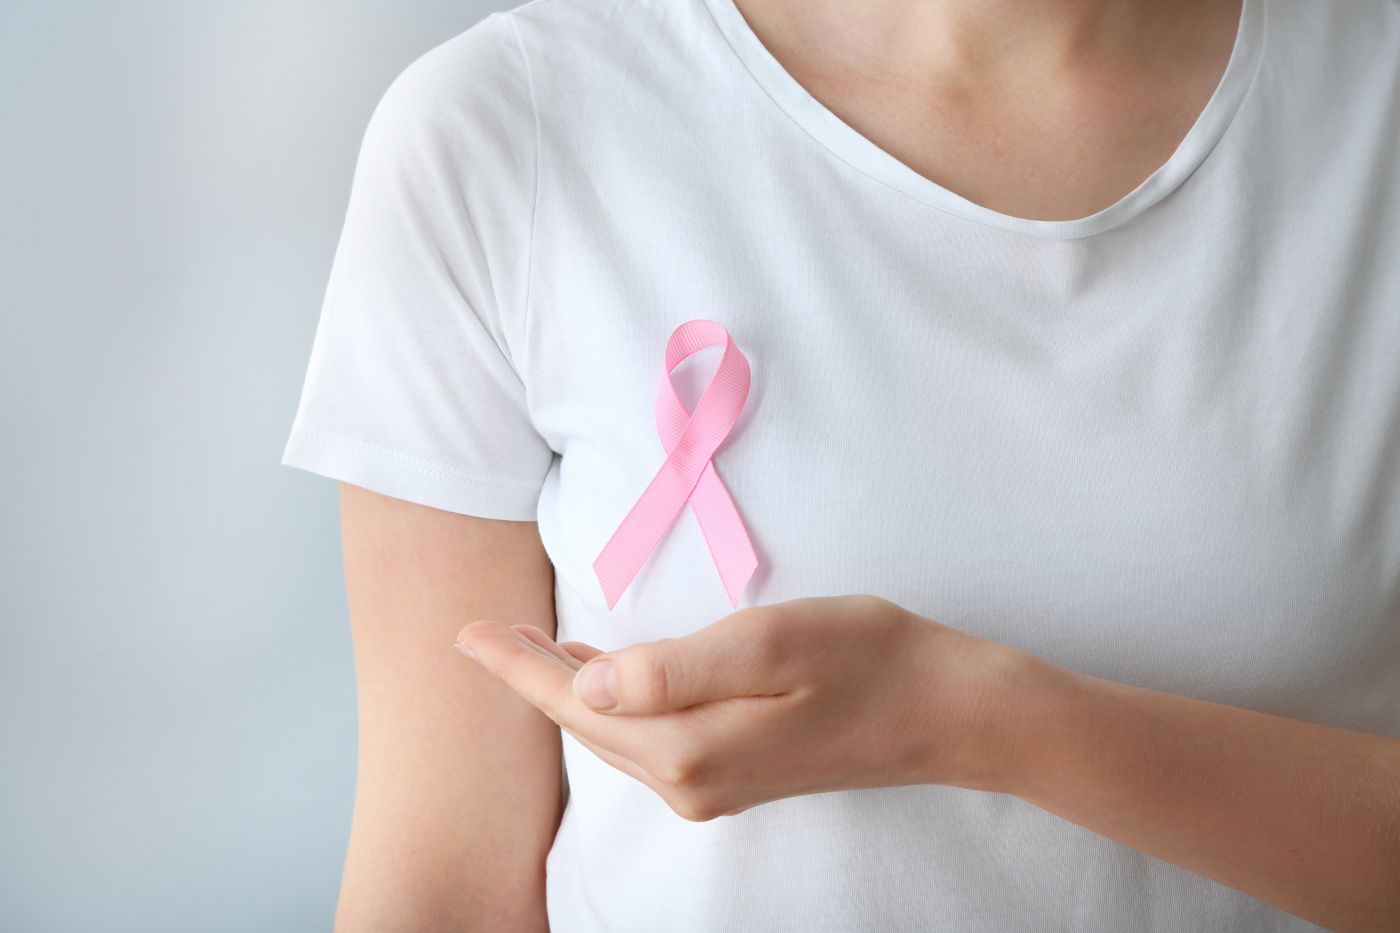 Bezpłatne badania mammograficzne w Karpaczu